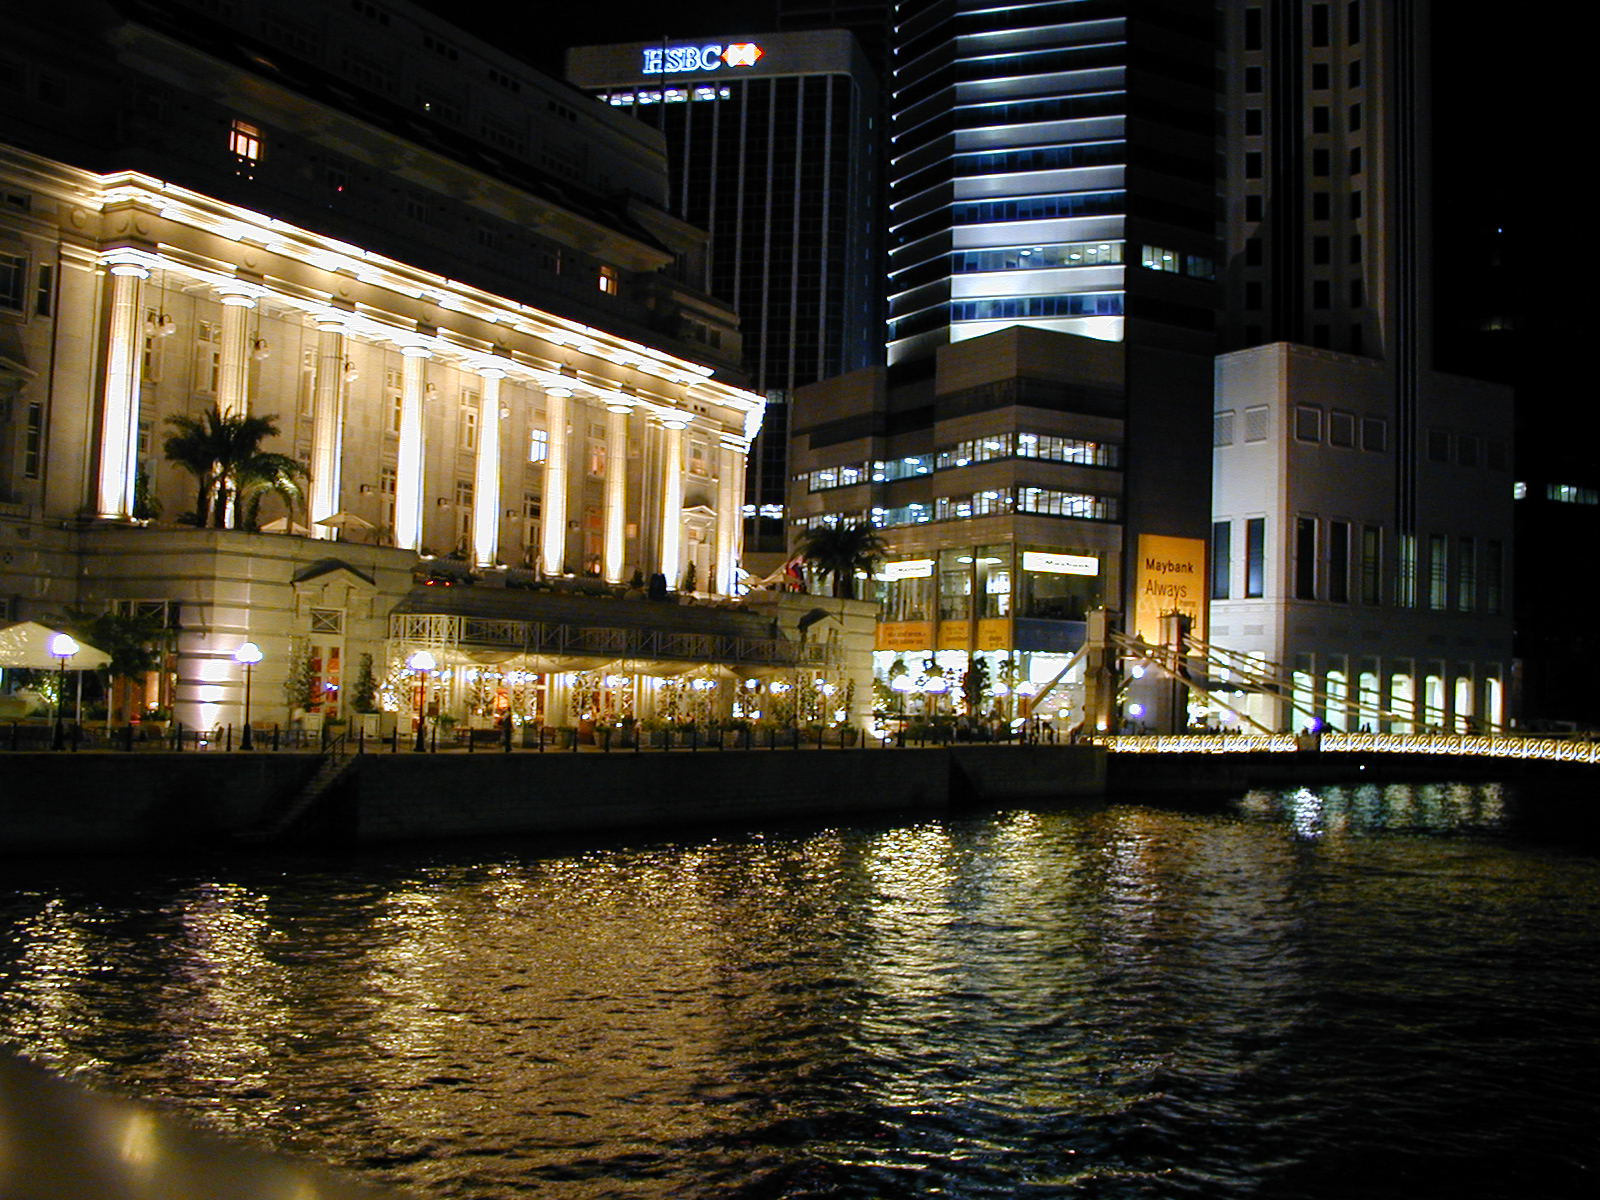 Singapore Night